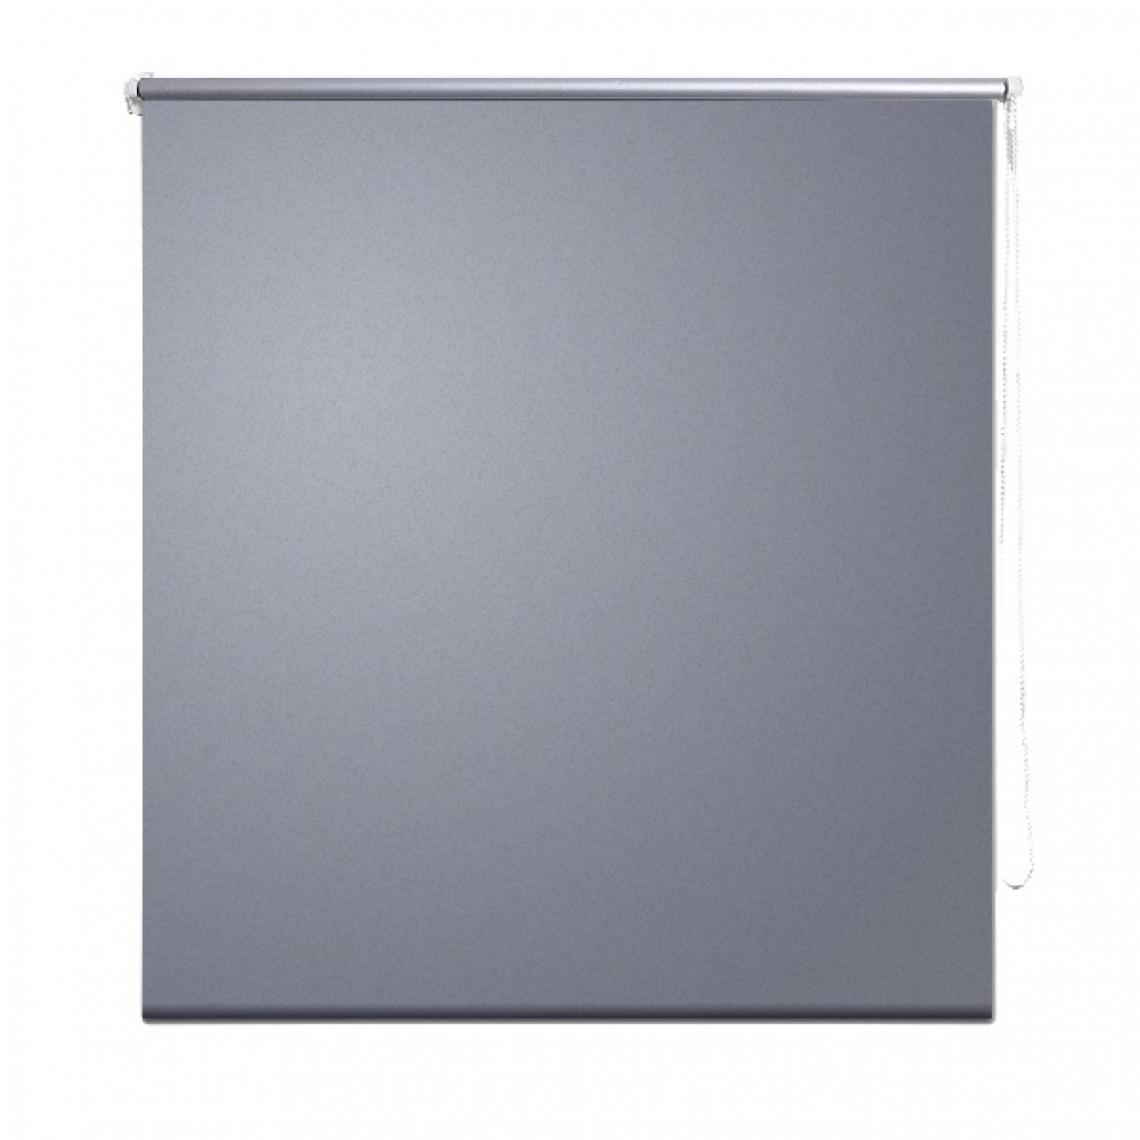 Helloshop26 - Store enrouleur gris occultant 80 x 175 cm fenêtre rideau pare-vue volet roulant 4102007 - Store compatible Velux